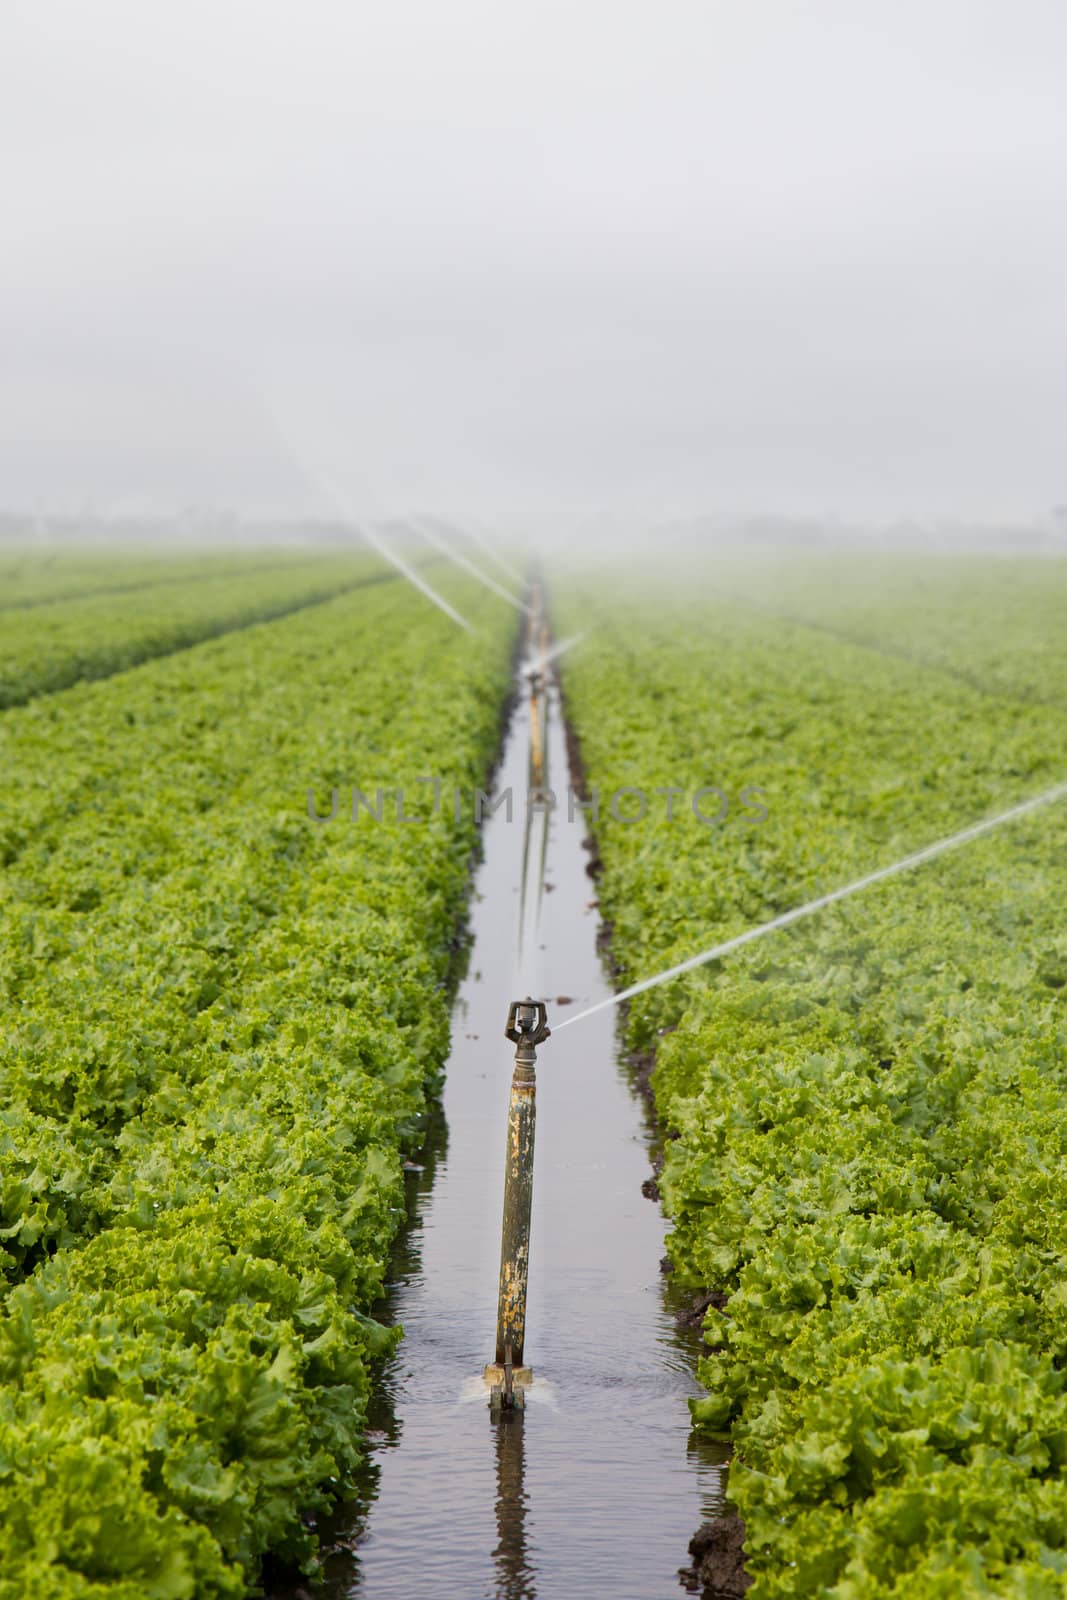 Lettuce Field Irrigation by wolterk